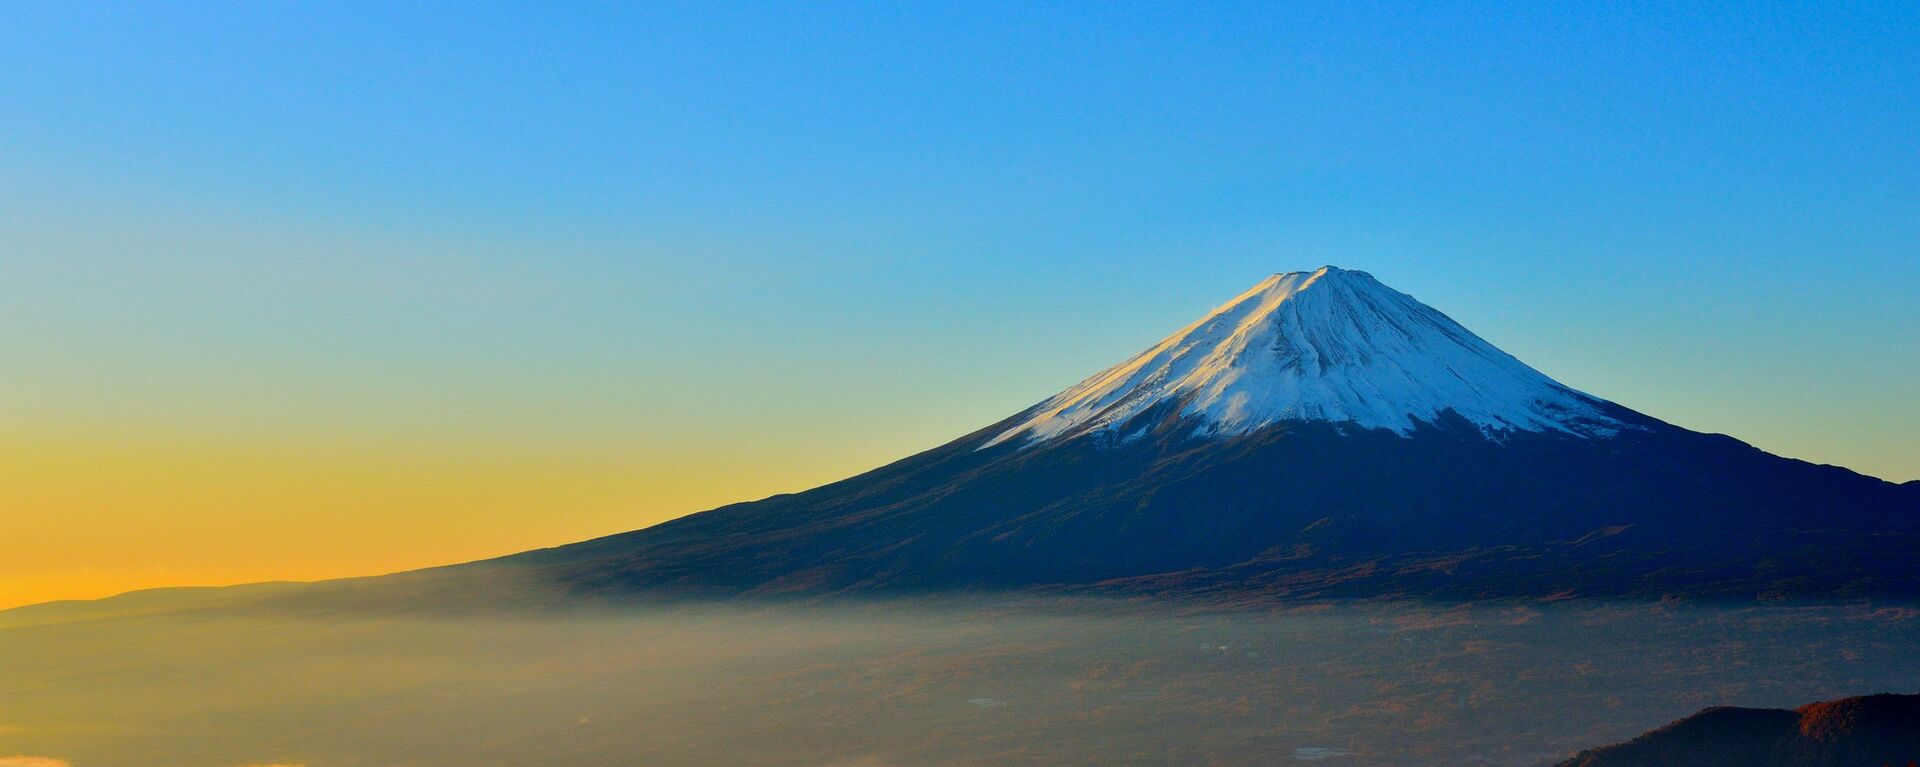 外国人観光客にも人気な富士山 - Sputnik 日本, 1920, 25.05.2022